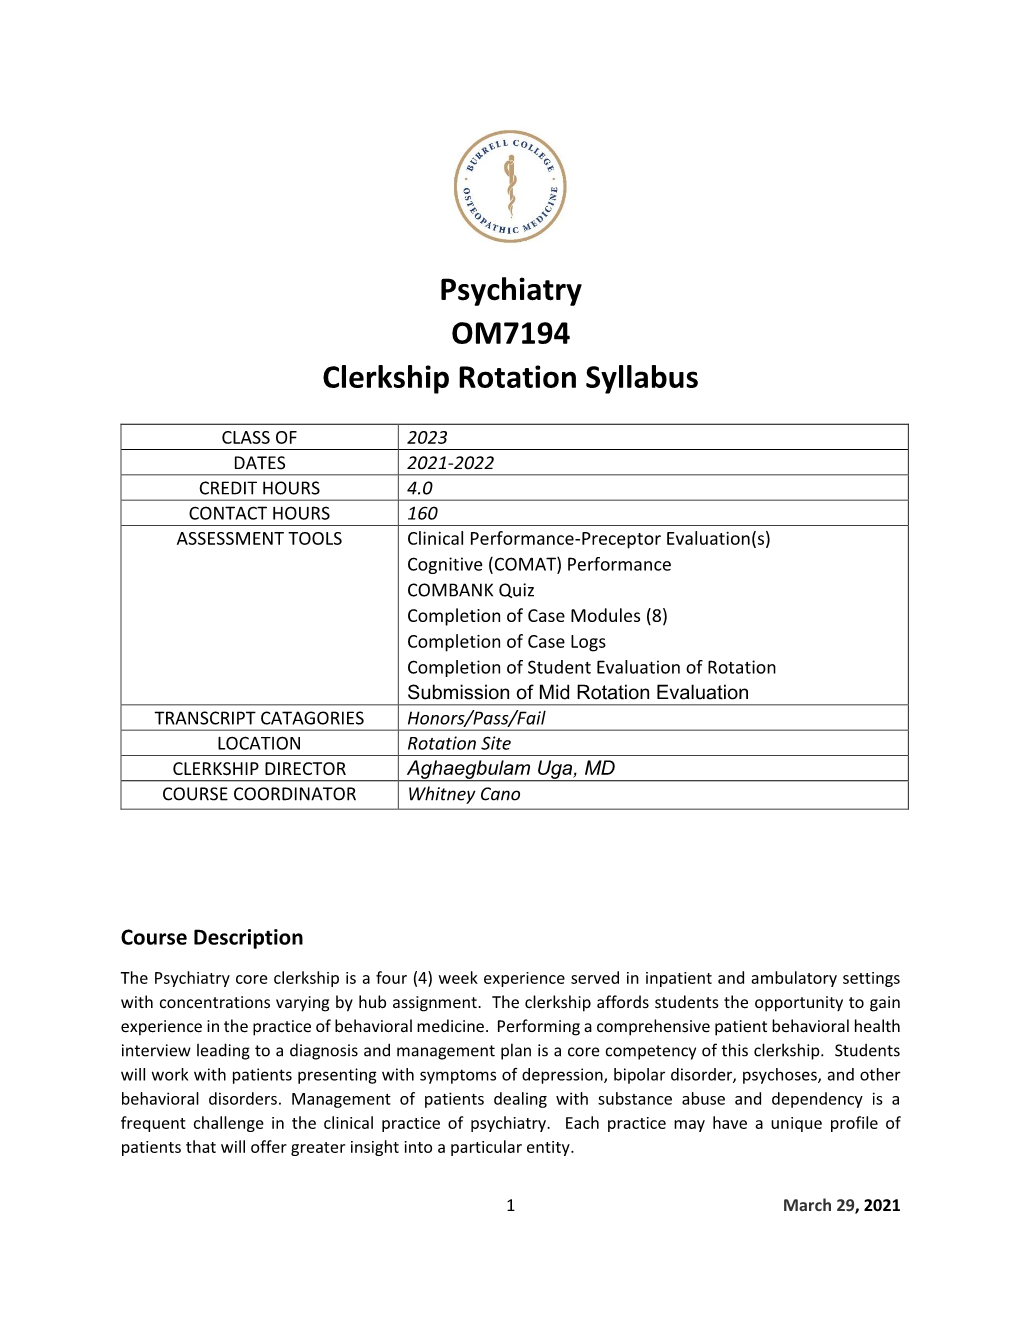 Psychiatry OM7194 Clerkship Rotation Syllabus